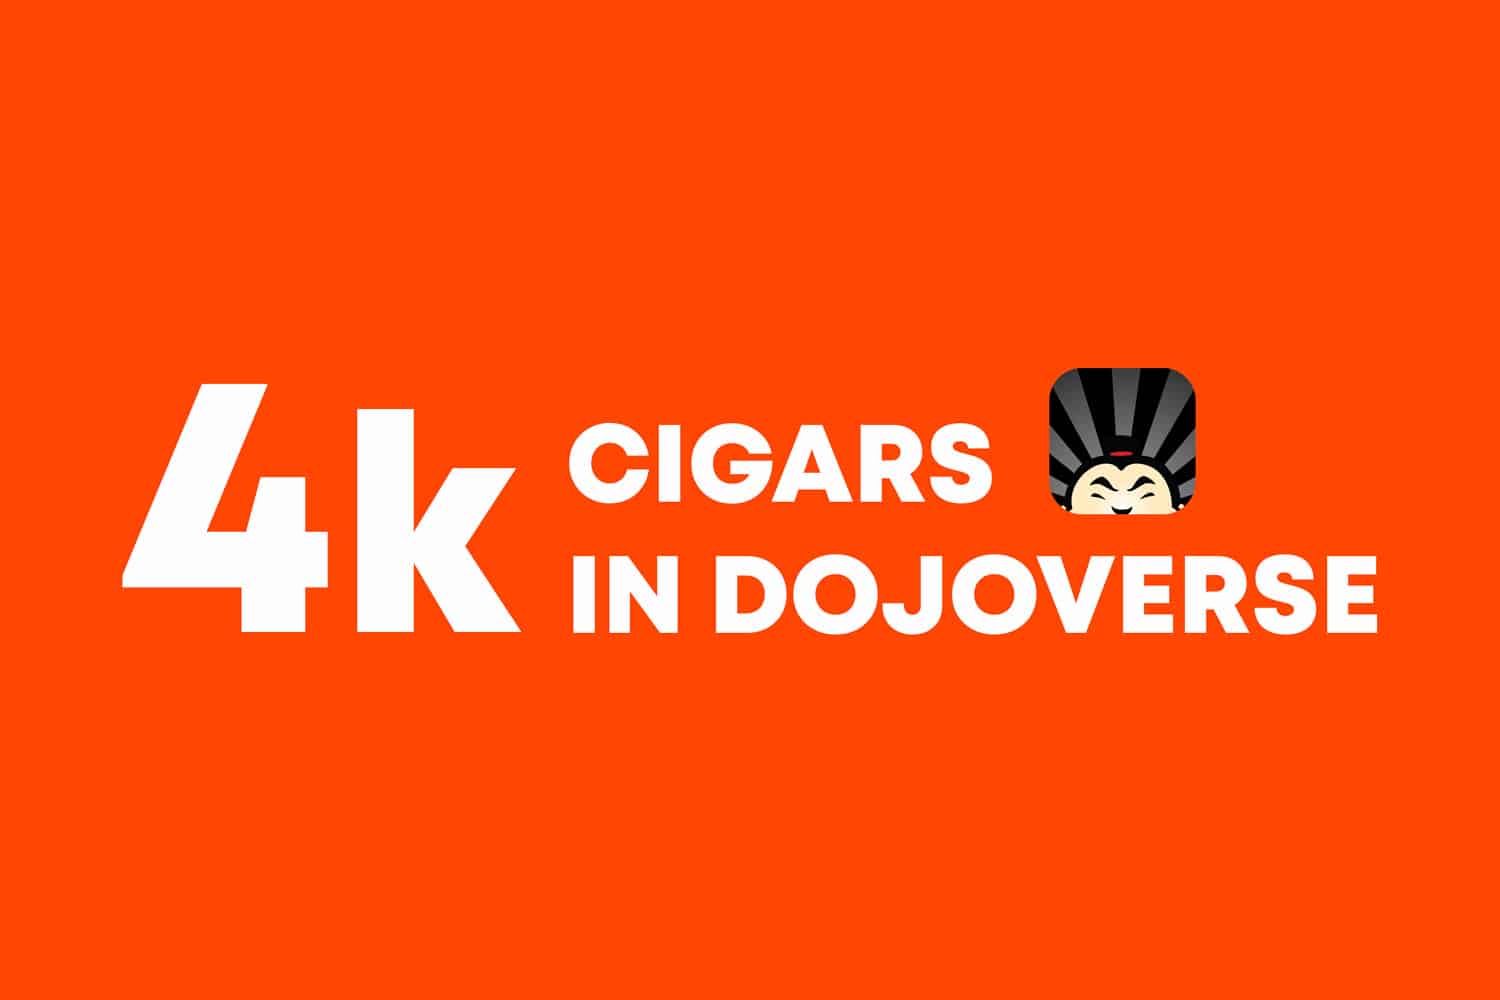 4,000-cigars-in-dojoverse-app